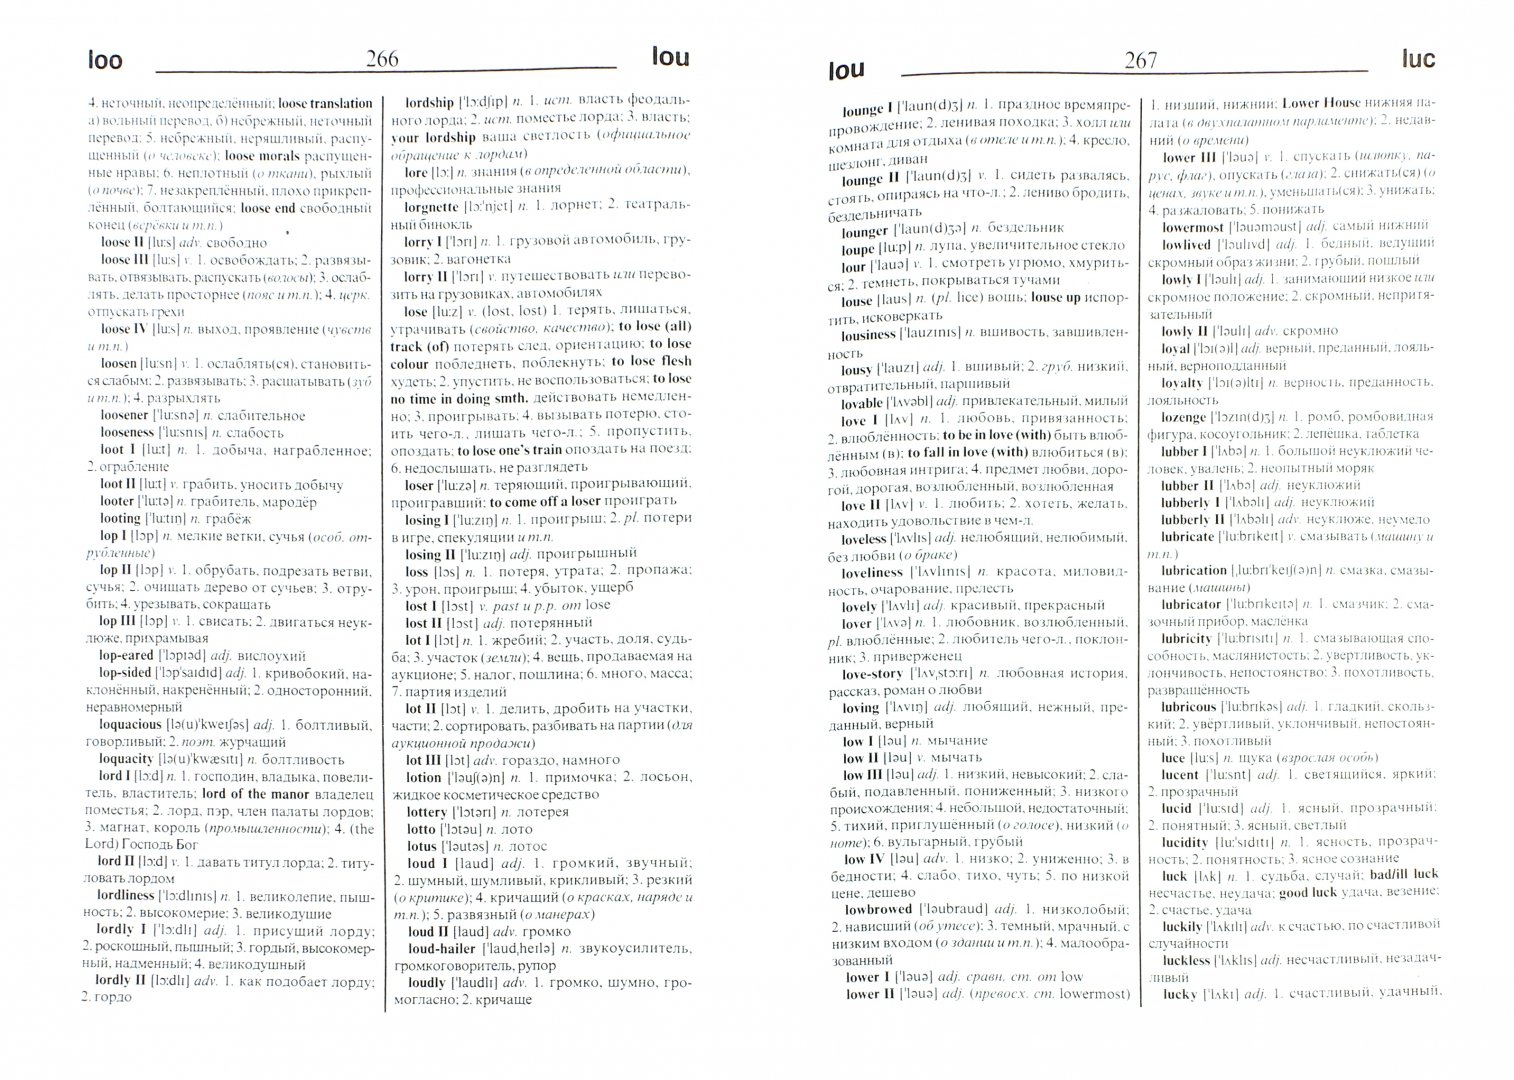 Иллюстрация 1 из 5 для Большой англо-русский и русско-английский словарь | Лабиринт - книги. Источник: Лабиринт